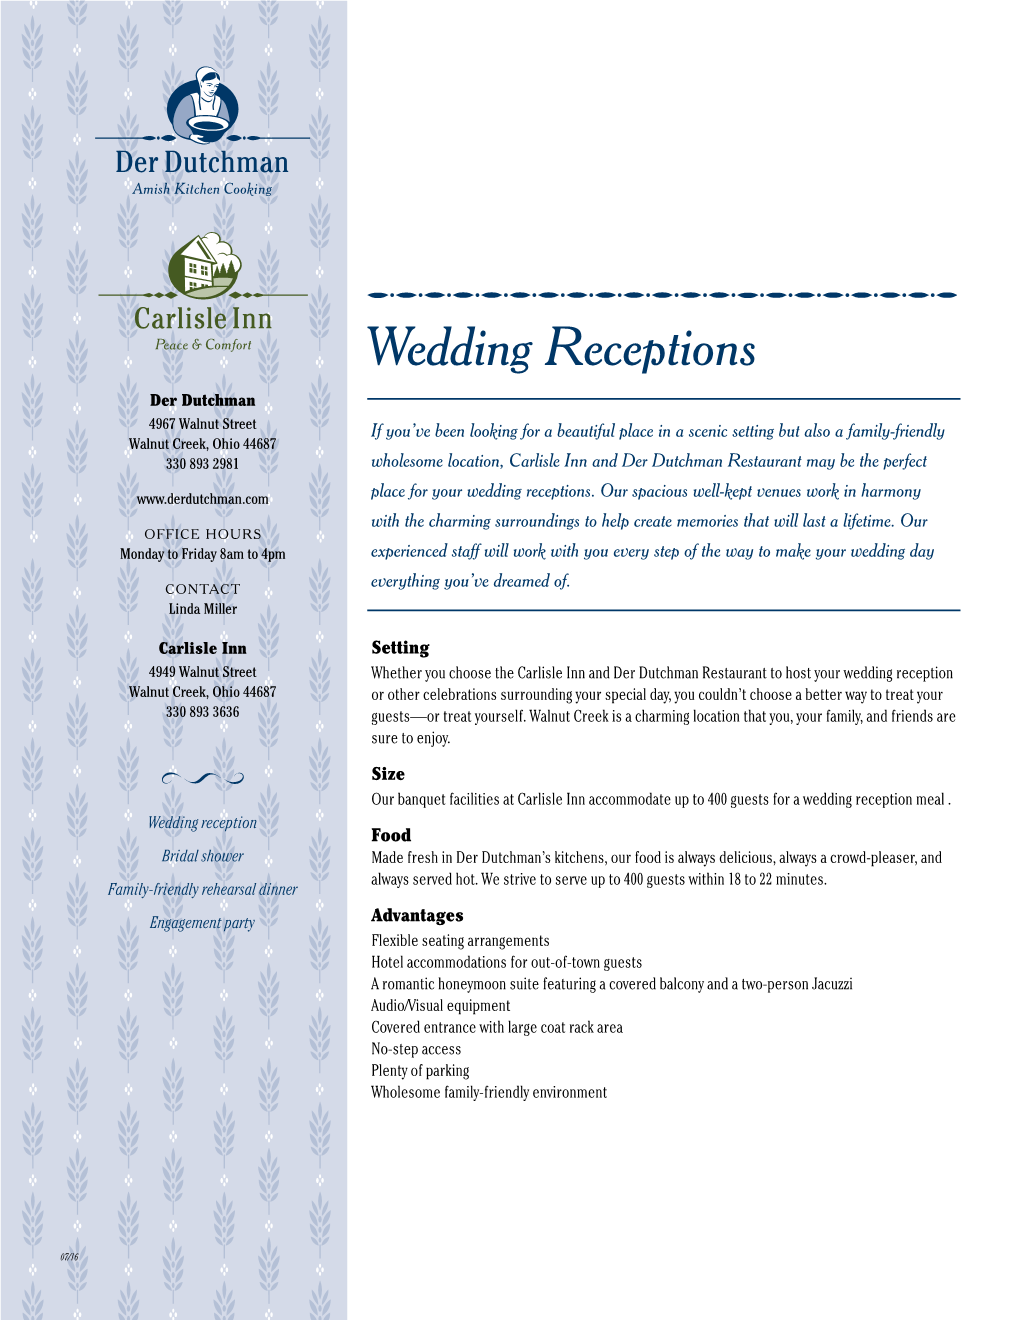 Wedding Receptions in Walnut Creek